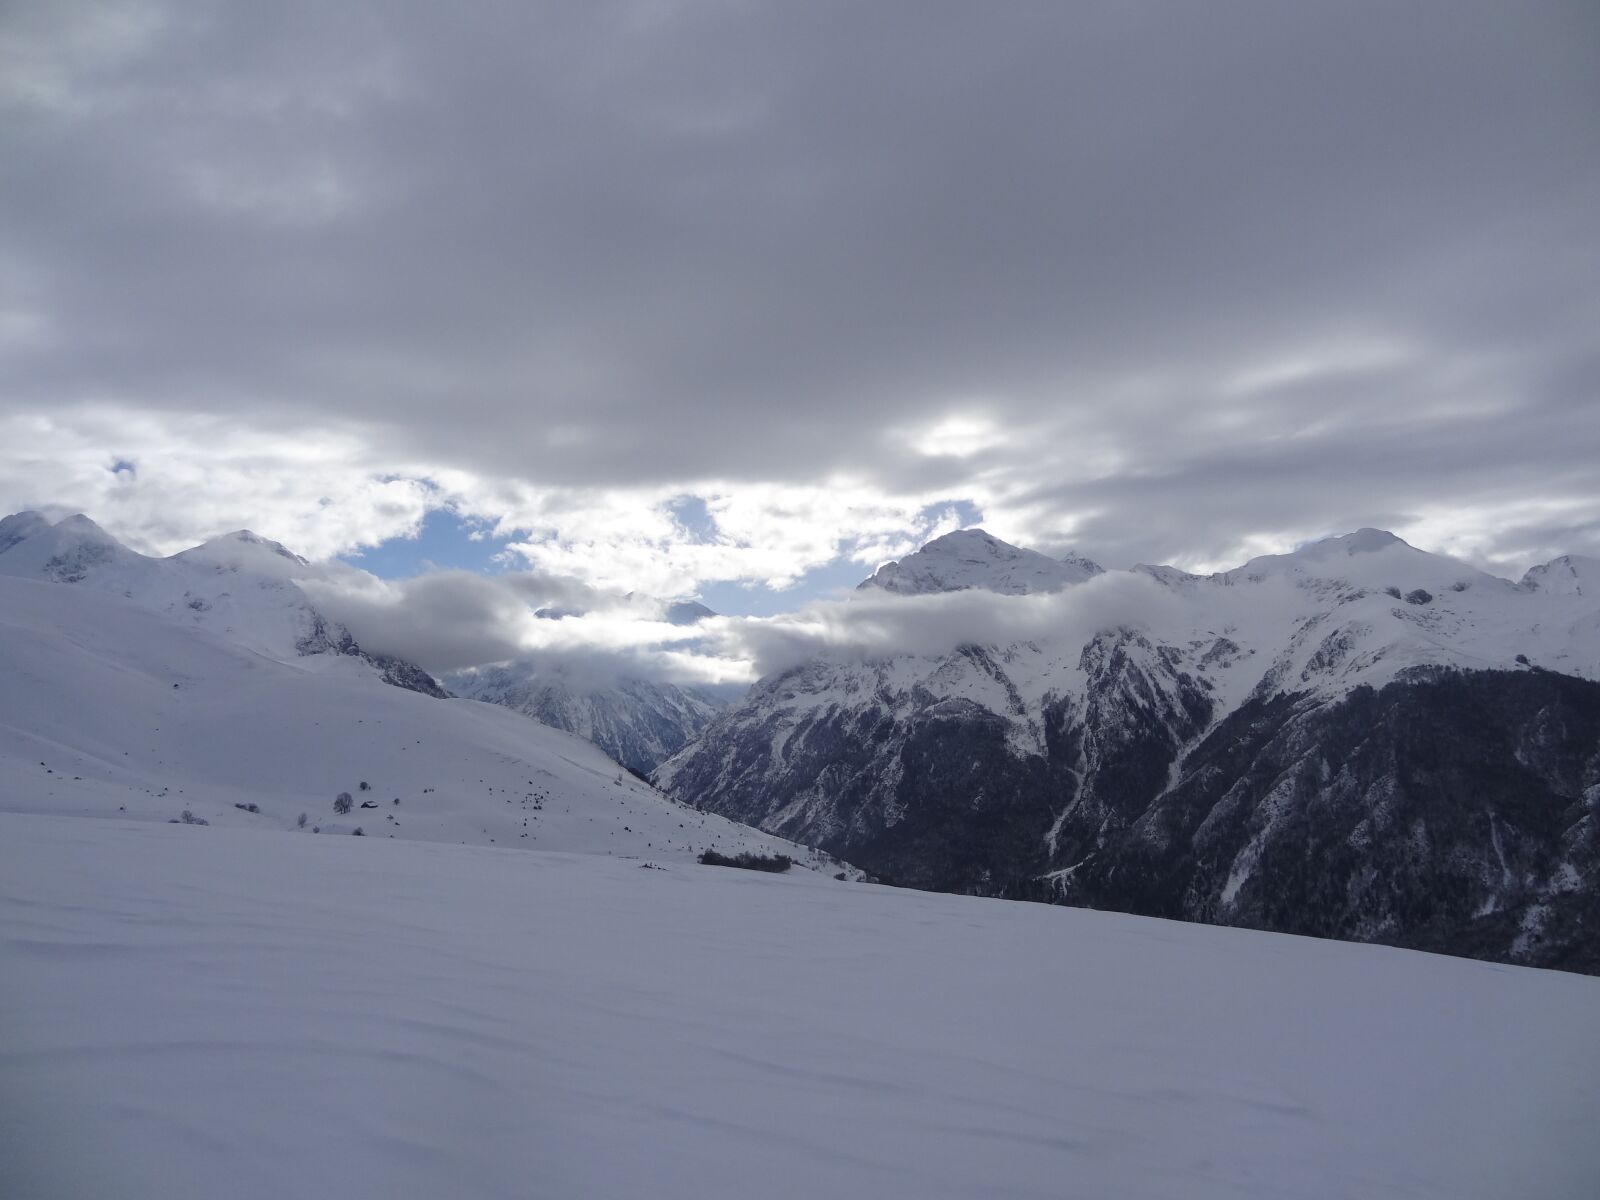 Sony Cyber-shot DSC-HX10V sample photo. Snow, mountains, landscape photography